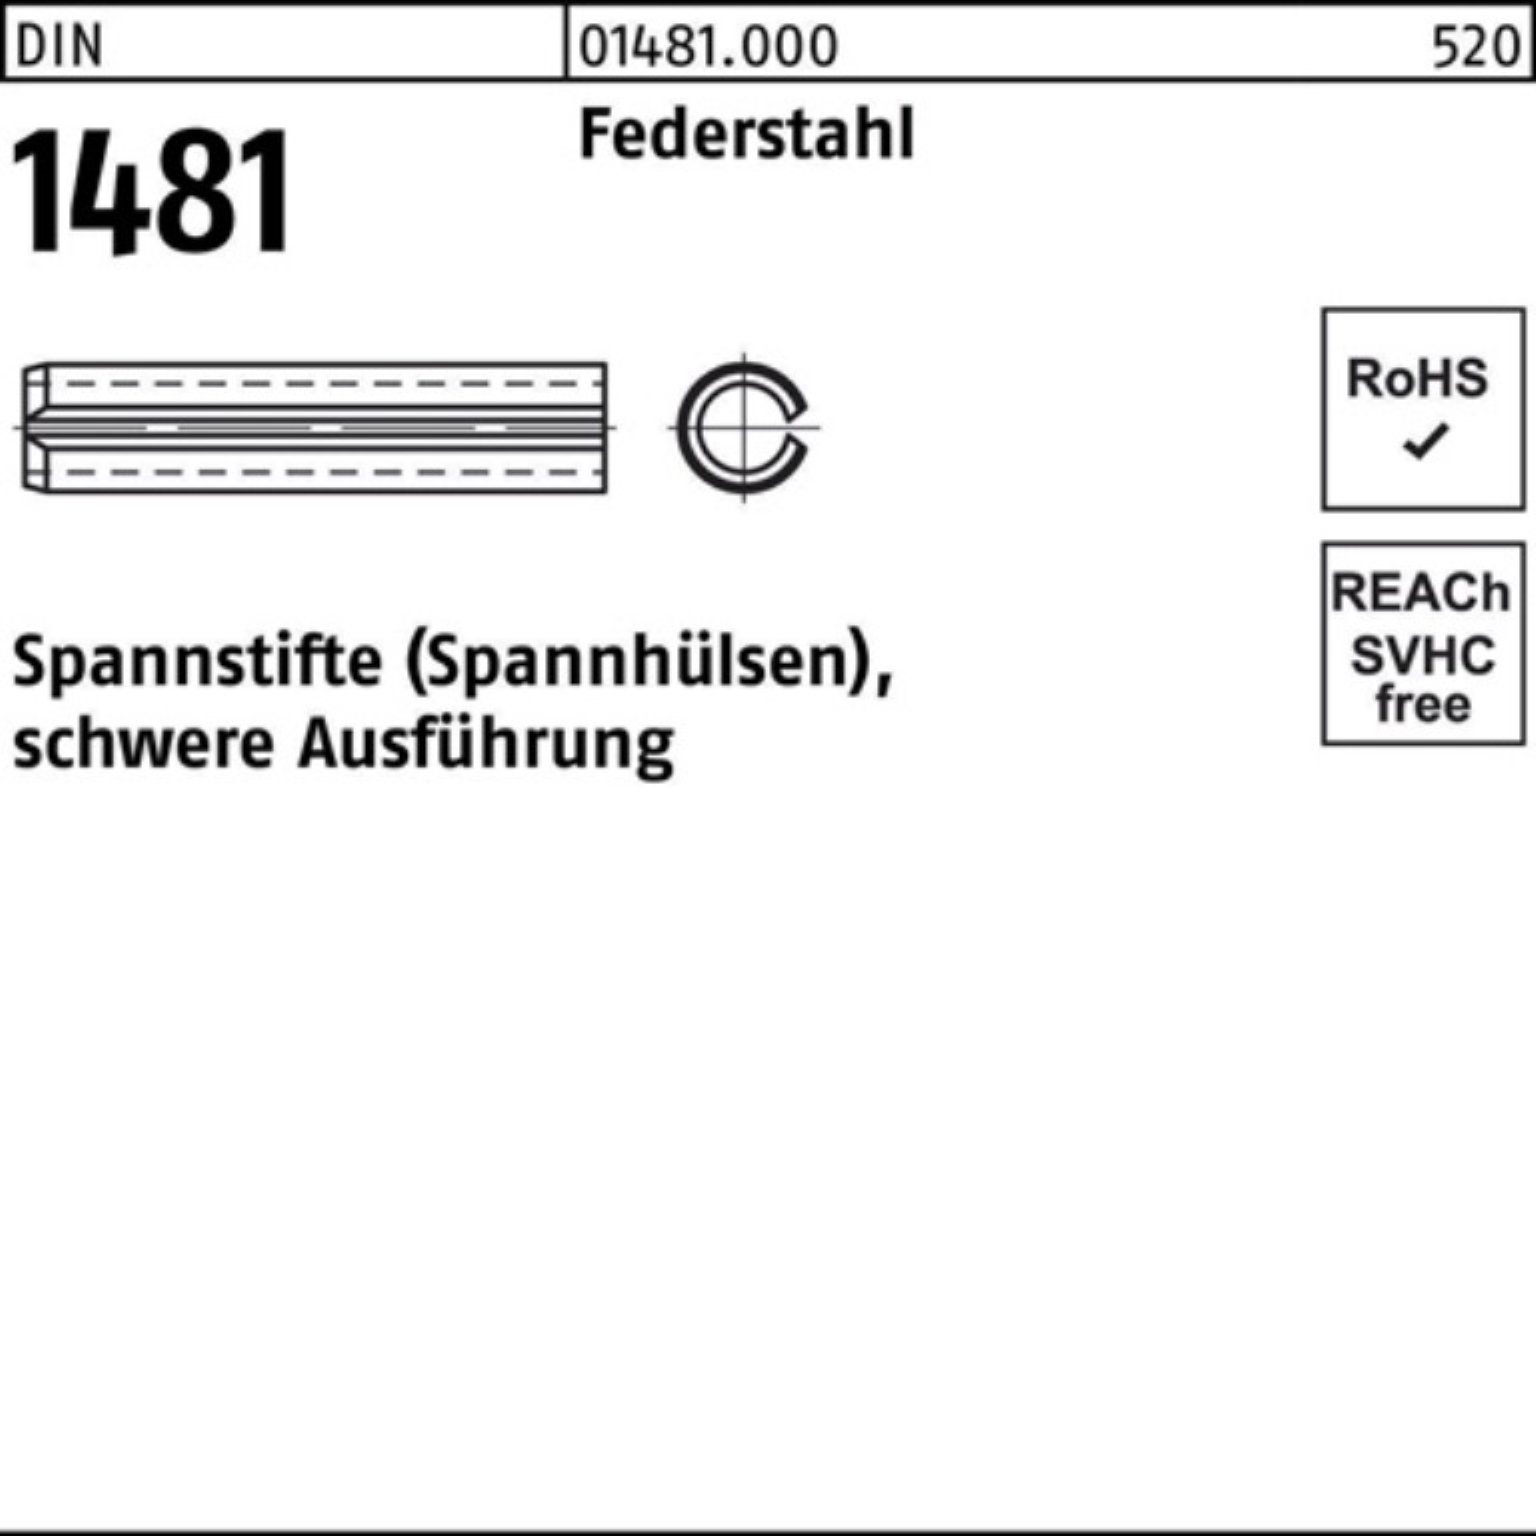 Reyher Spannstift 500er Pack Spannstift DIN 1481 6x 14 Federstahl schwere Ausführung 50